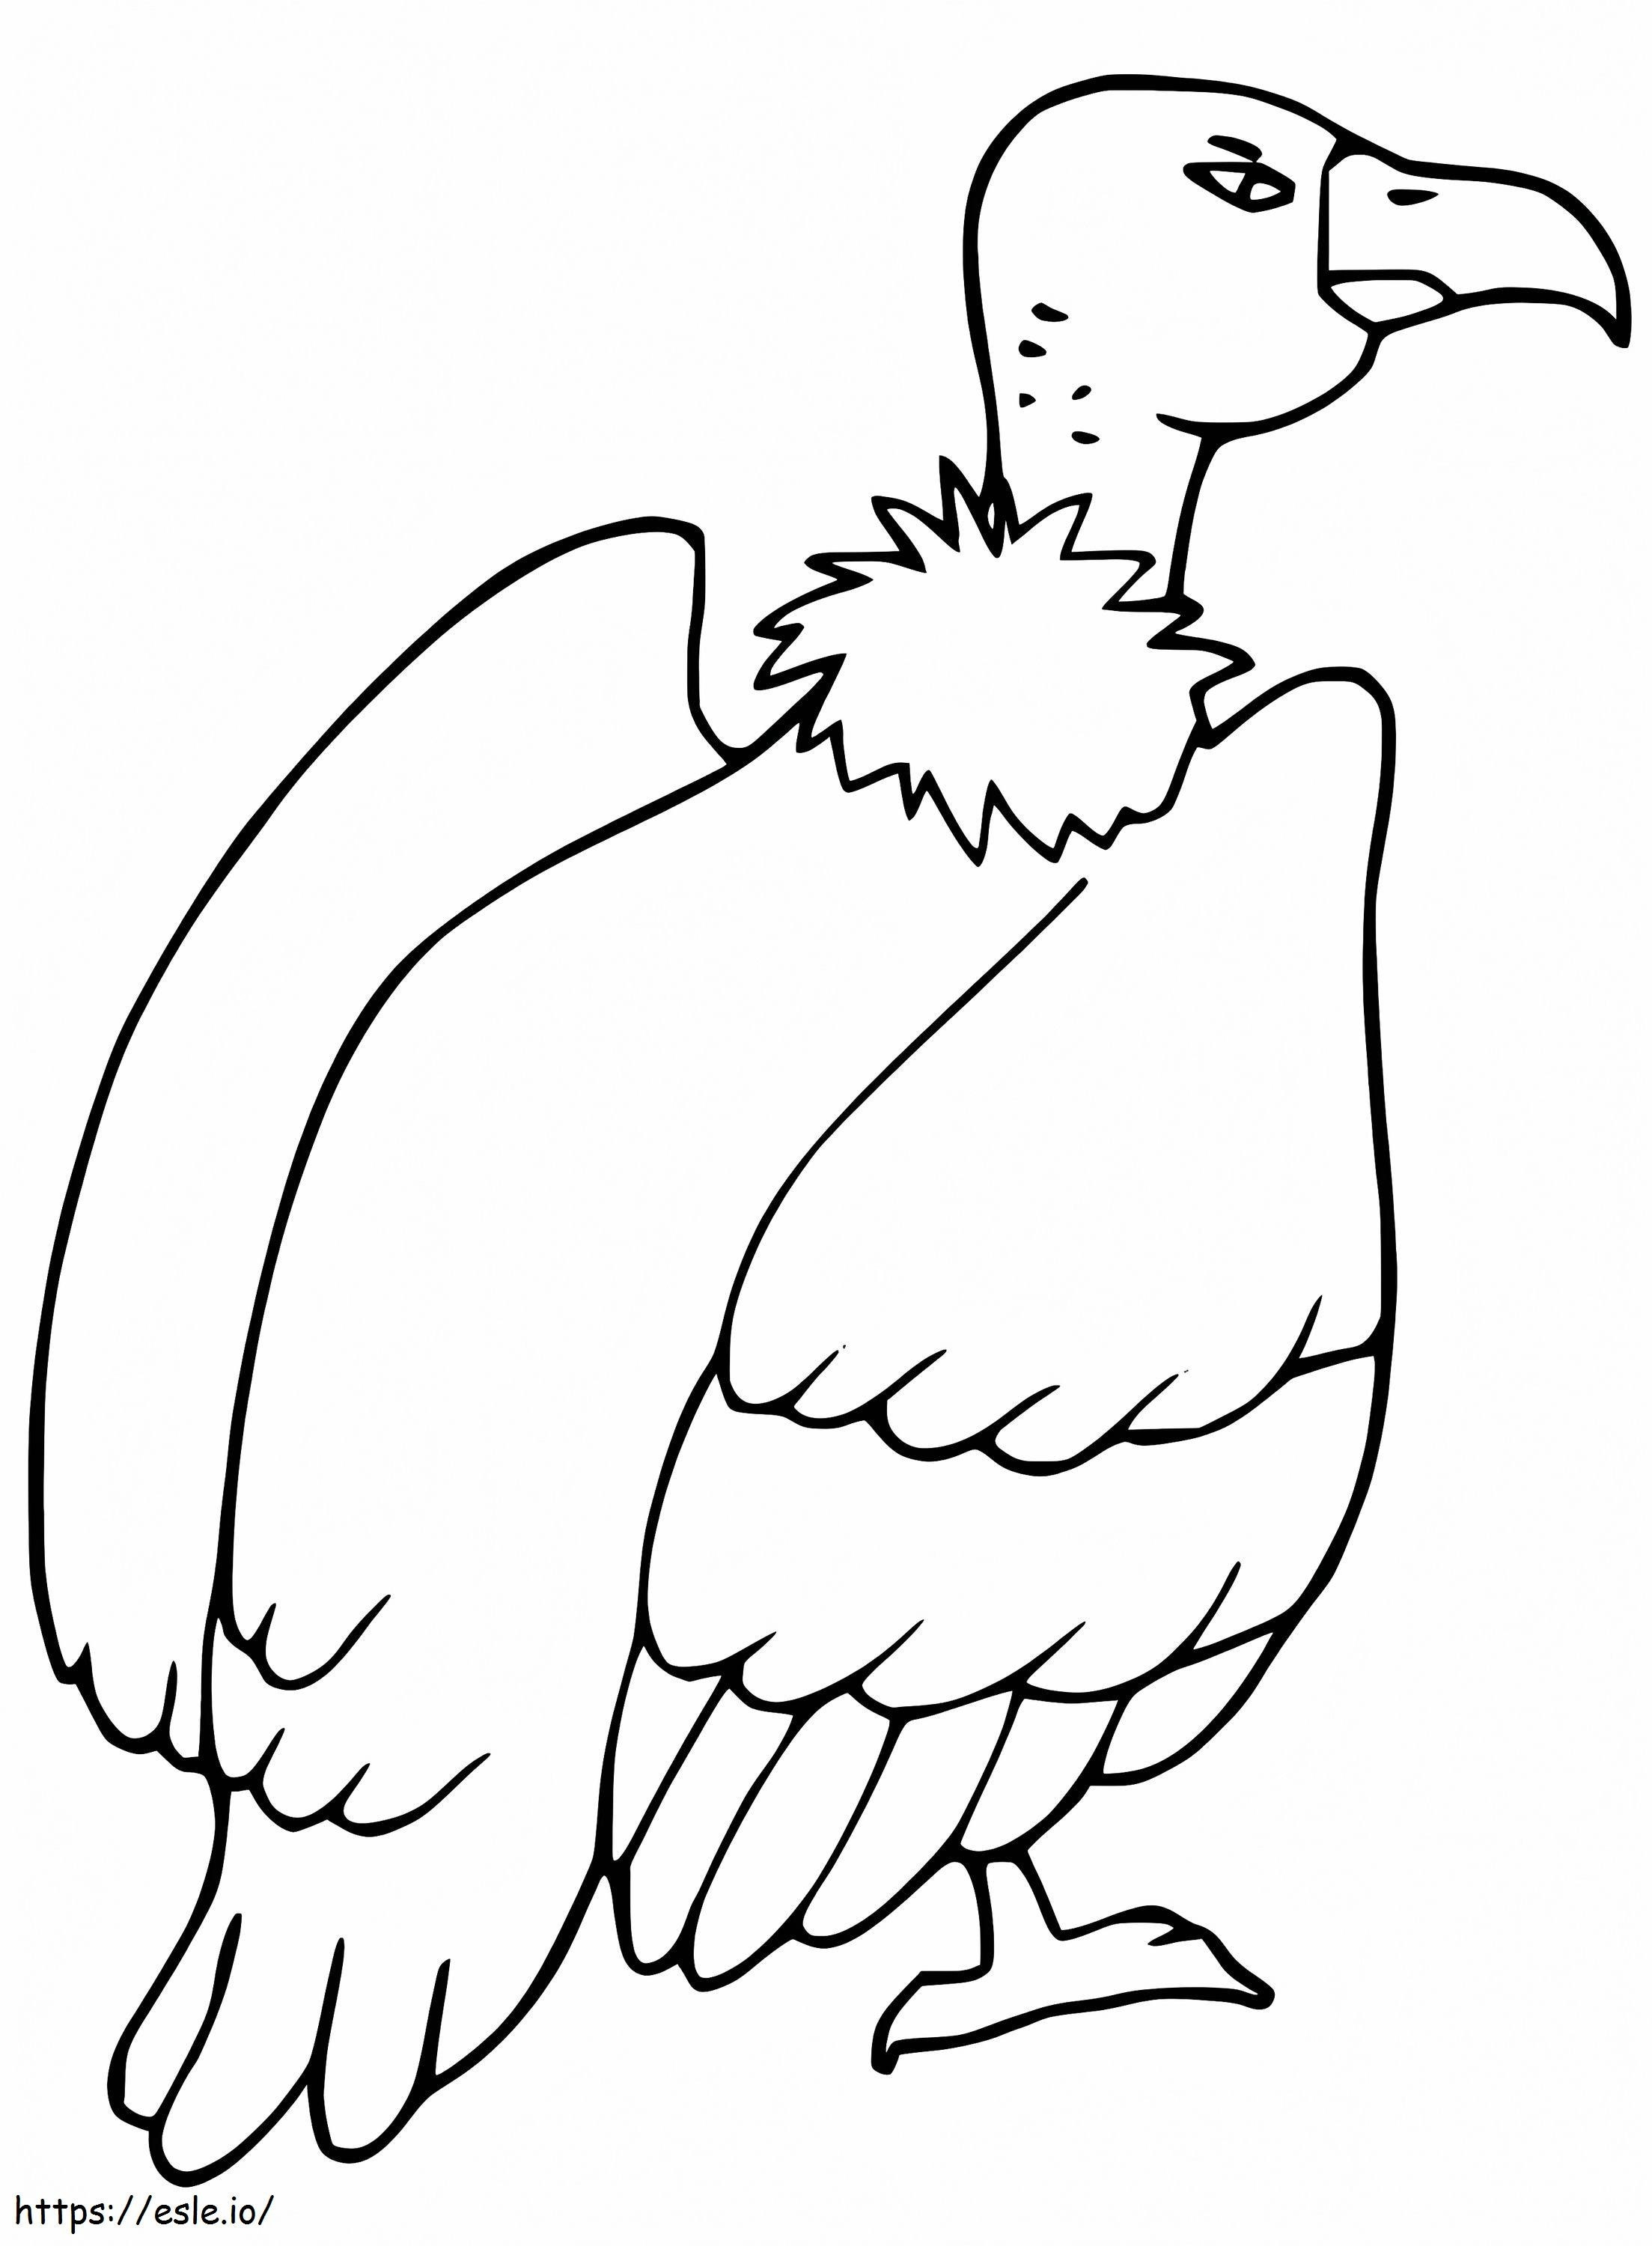 Avvoltoio stampabile da colorare